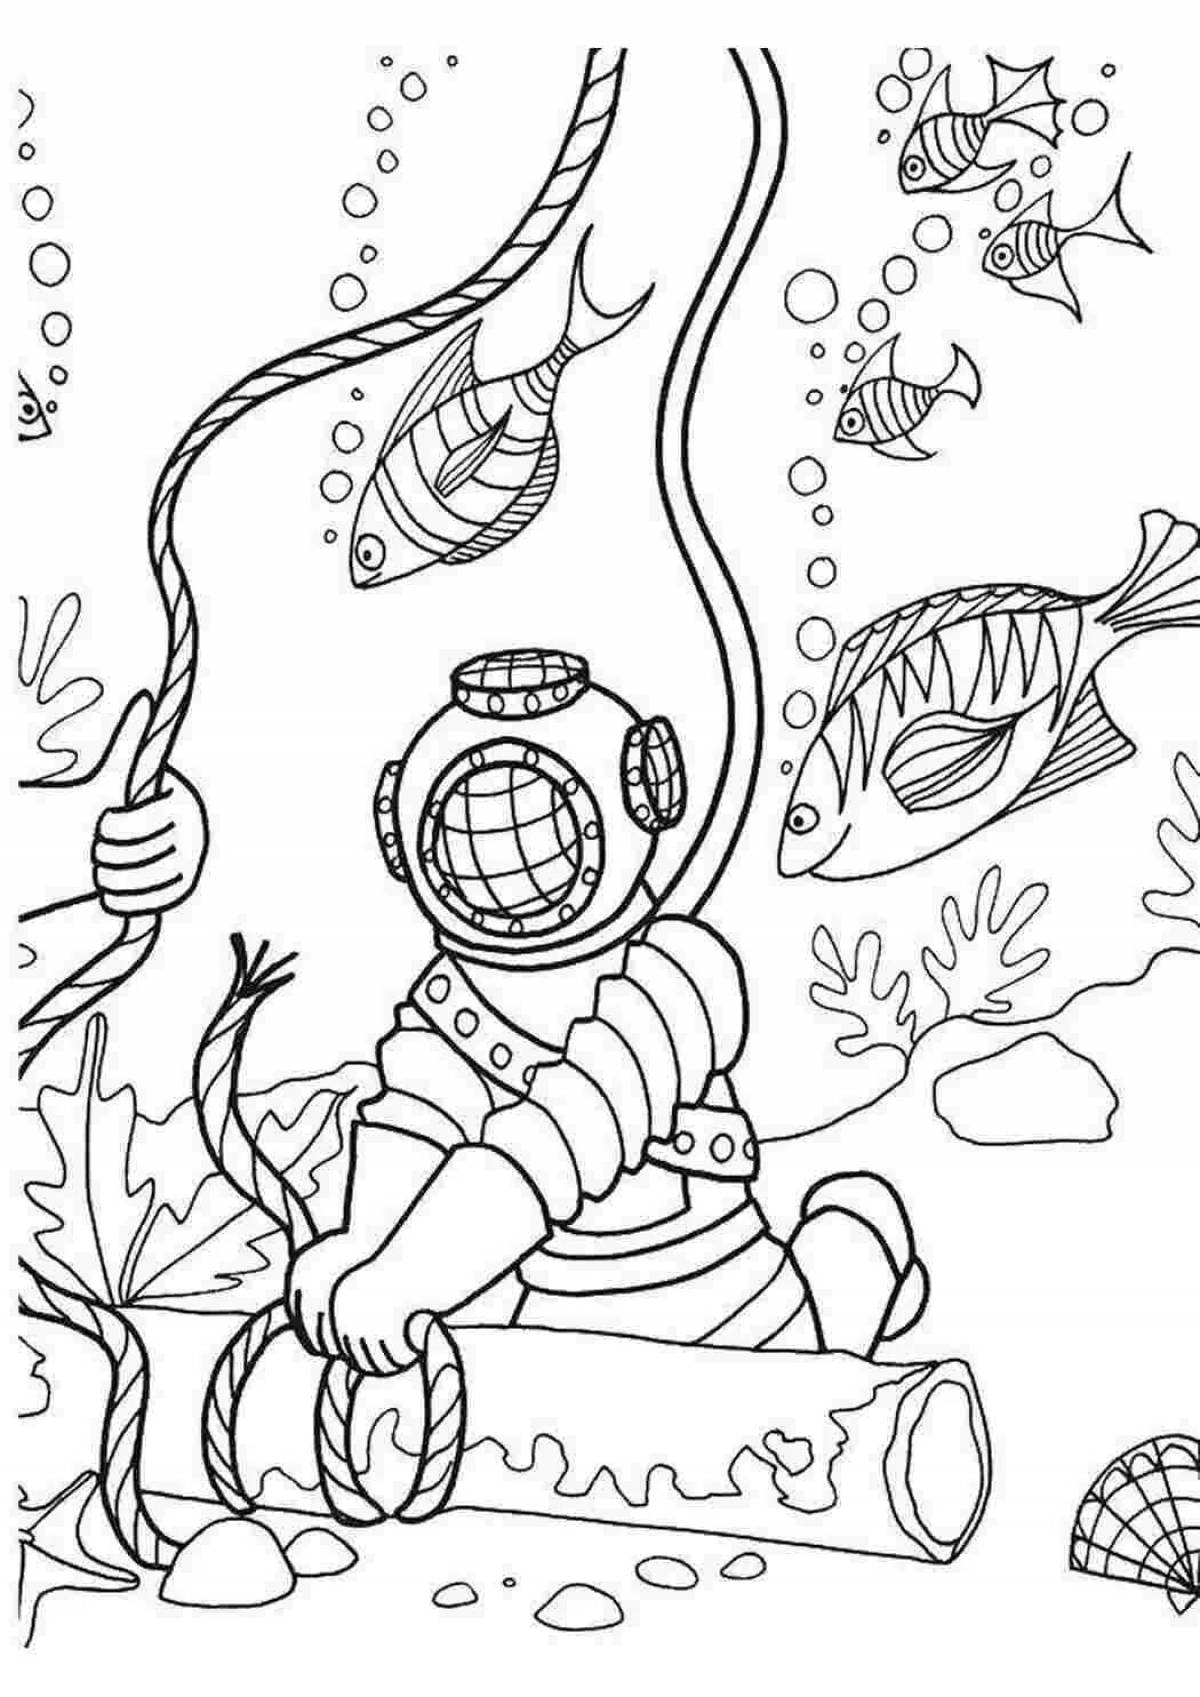 Dynamic scuba diver coloring page